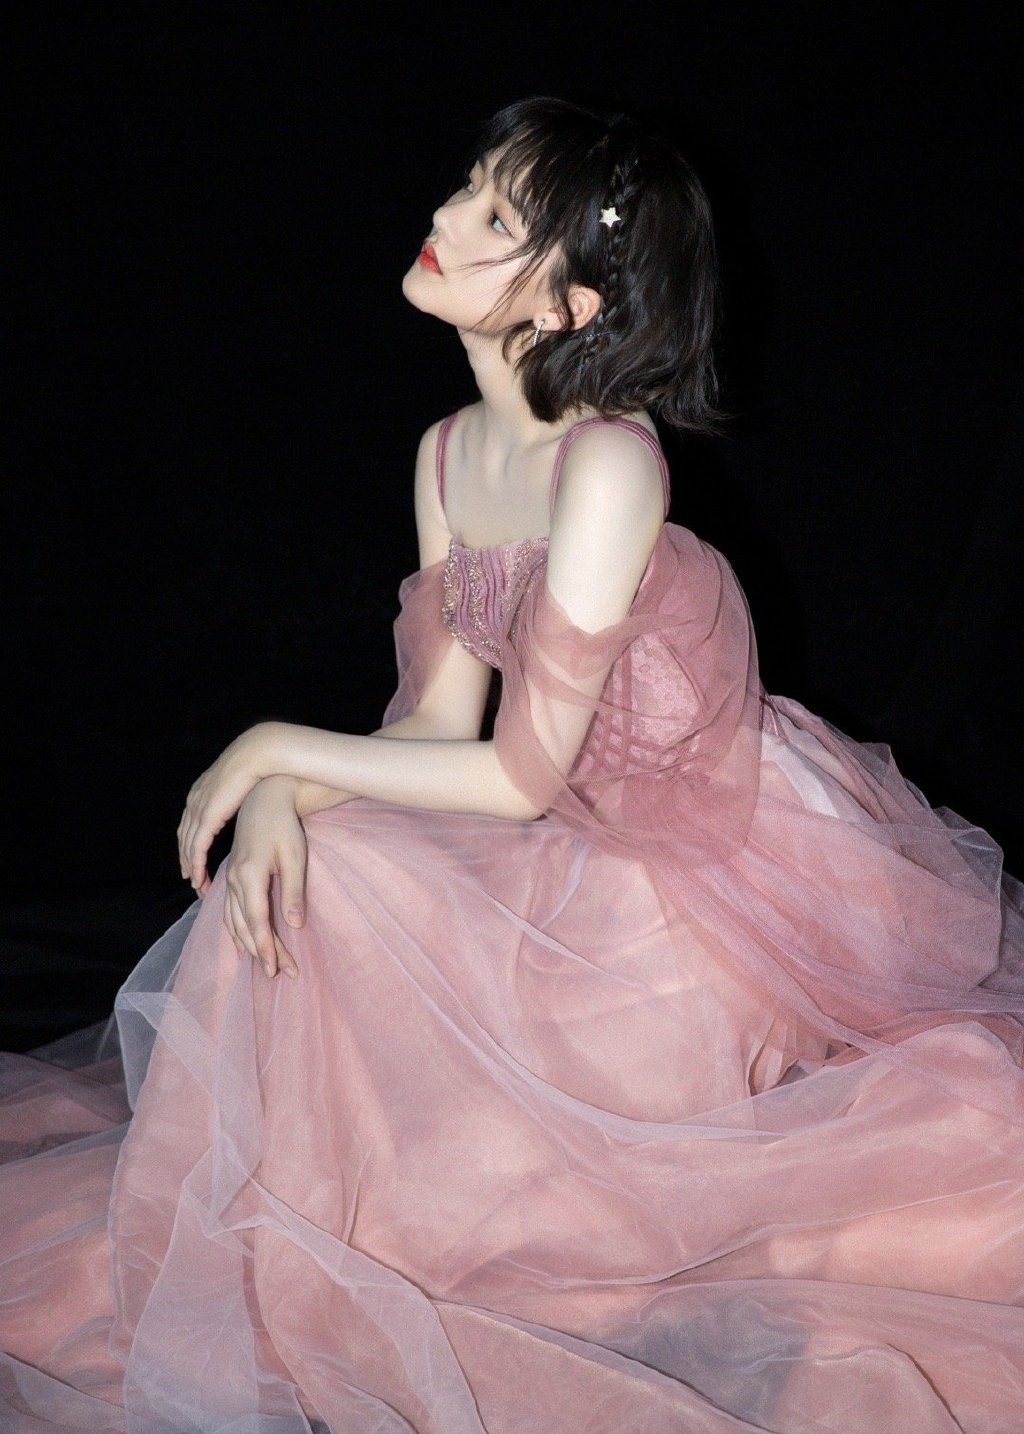 任敏粉色纱裙优雅时尚活动照图片